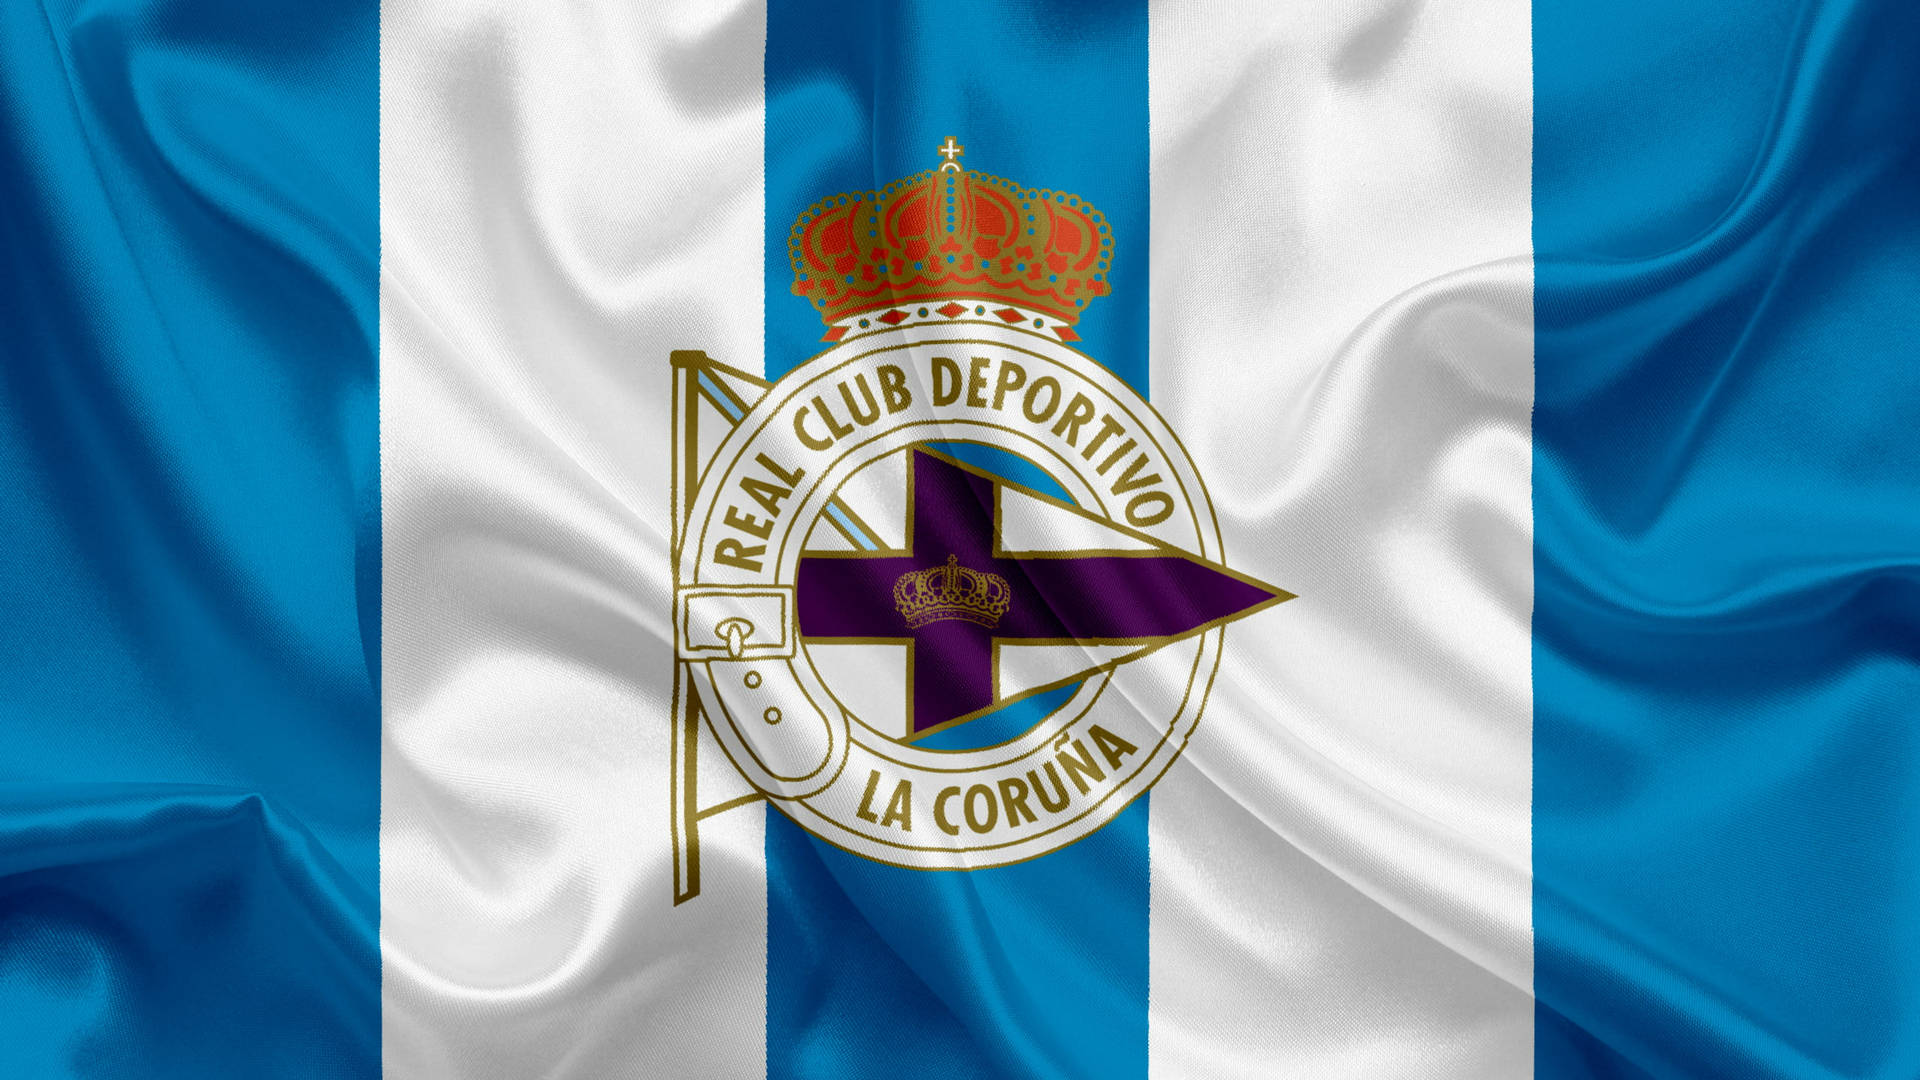 La Liga Deportivo La Coruña Flag Background